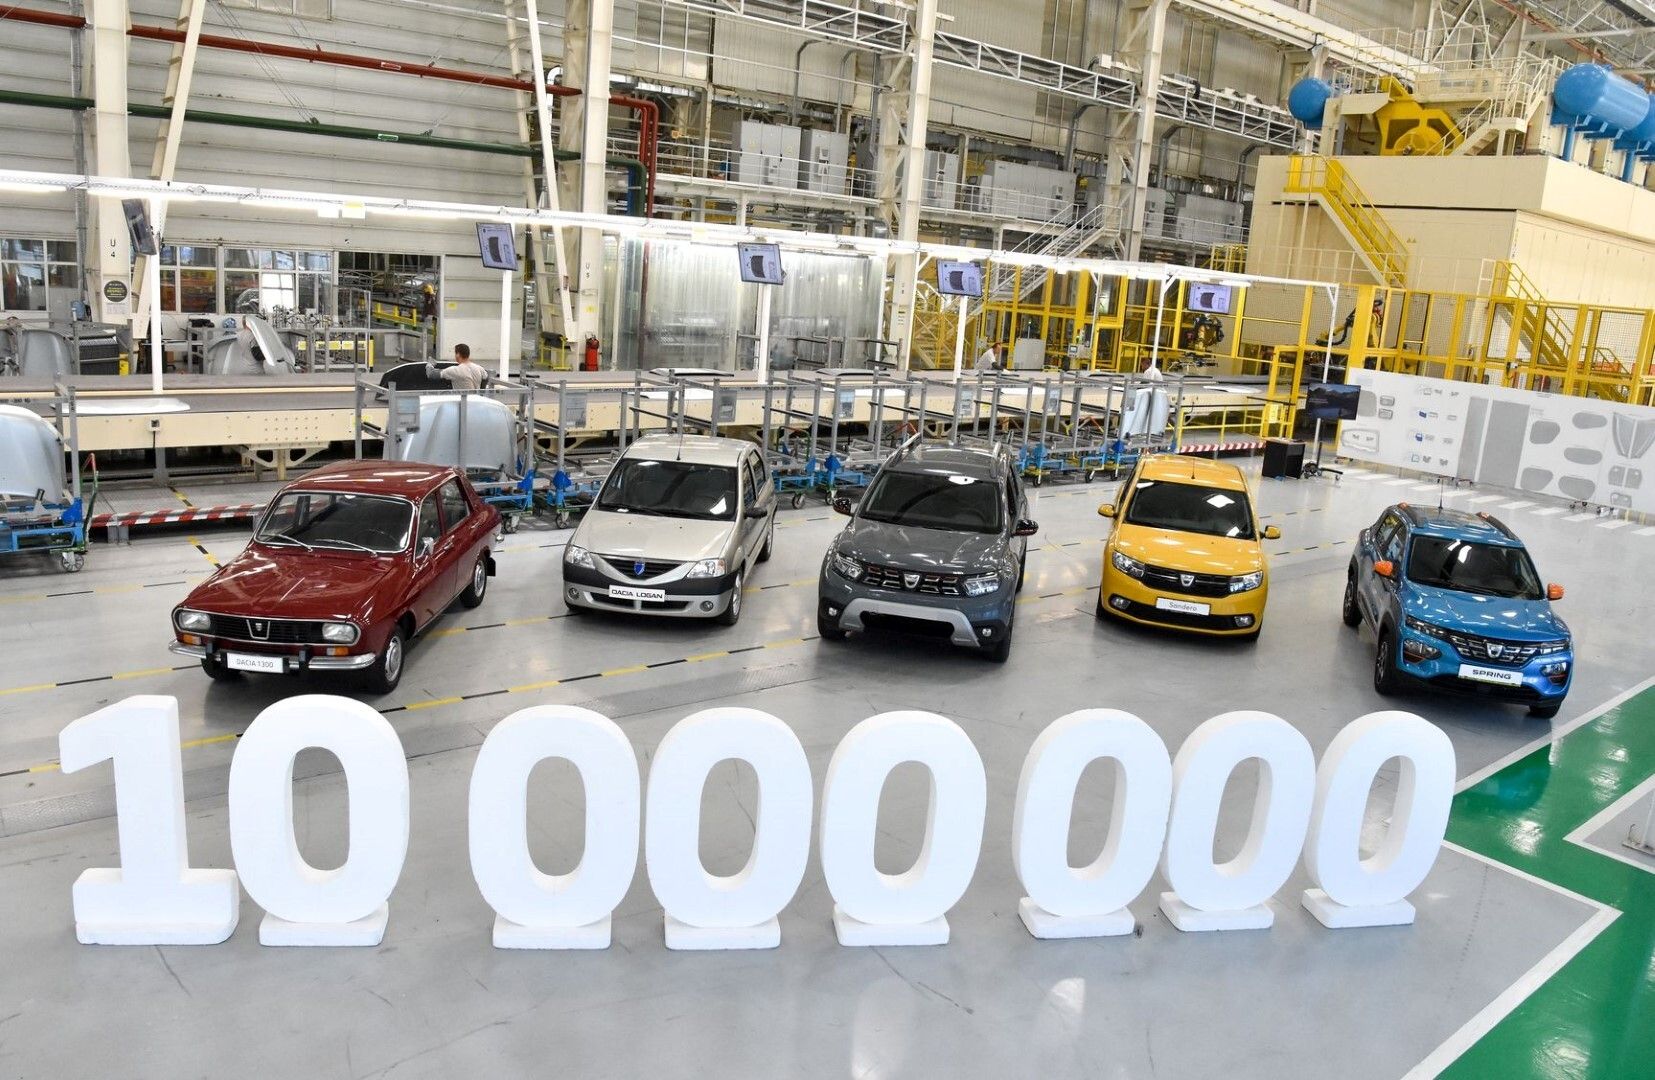 Η Dacia γιορτάζει τα 10.000.000 αυτοκίνητα!